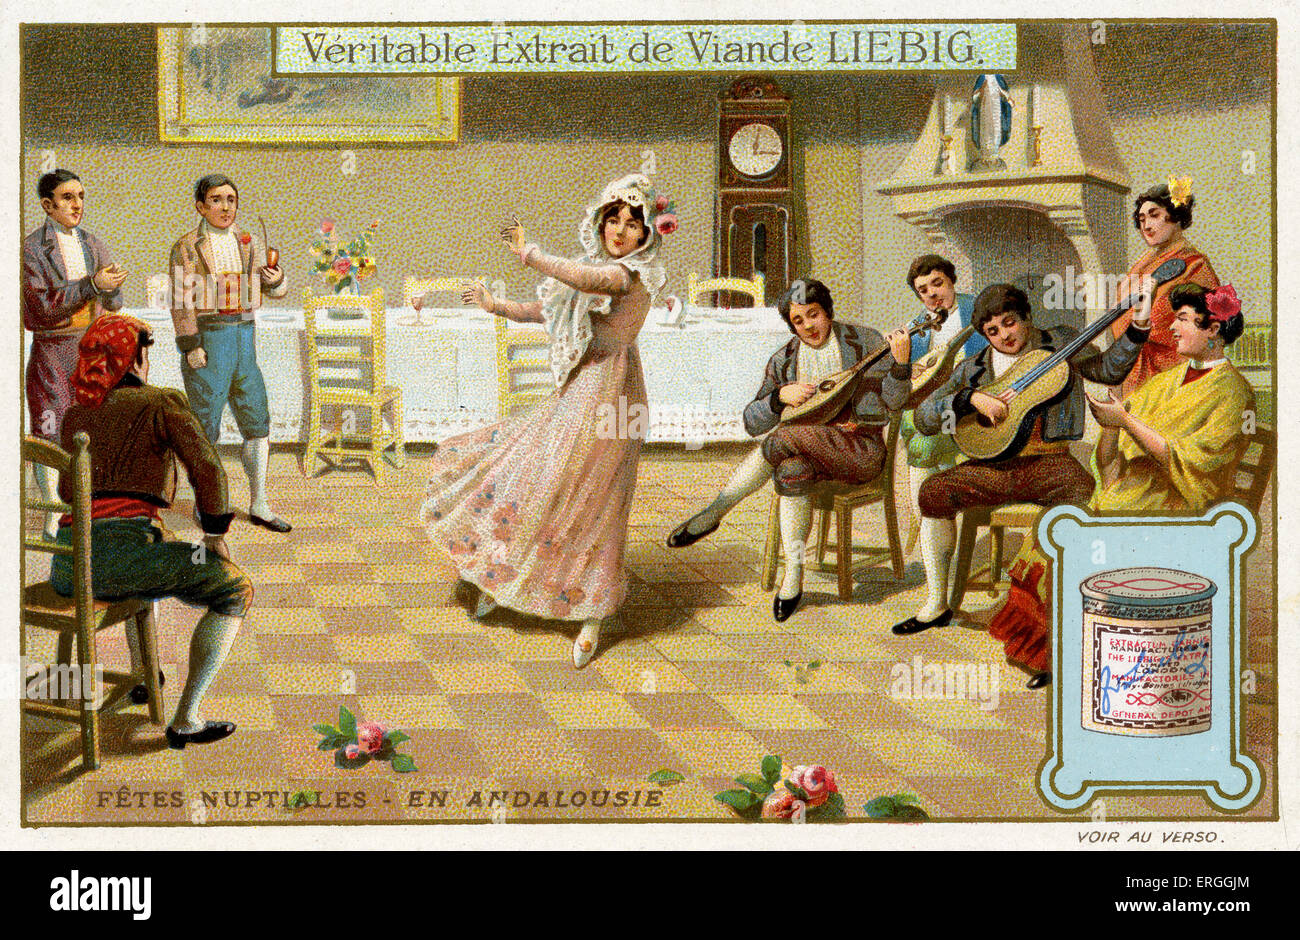 Hochzeitsfeiern: Andalusien, 1910. Traditionelle Trauung. Liebig-Sammelkartenspiel ("FÊTES NUPTIALES"). Stockfoto